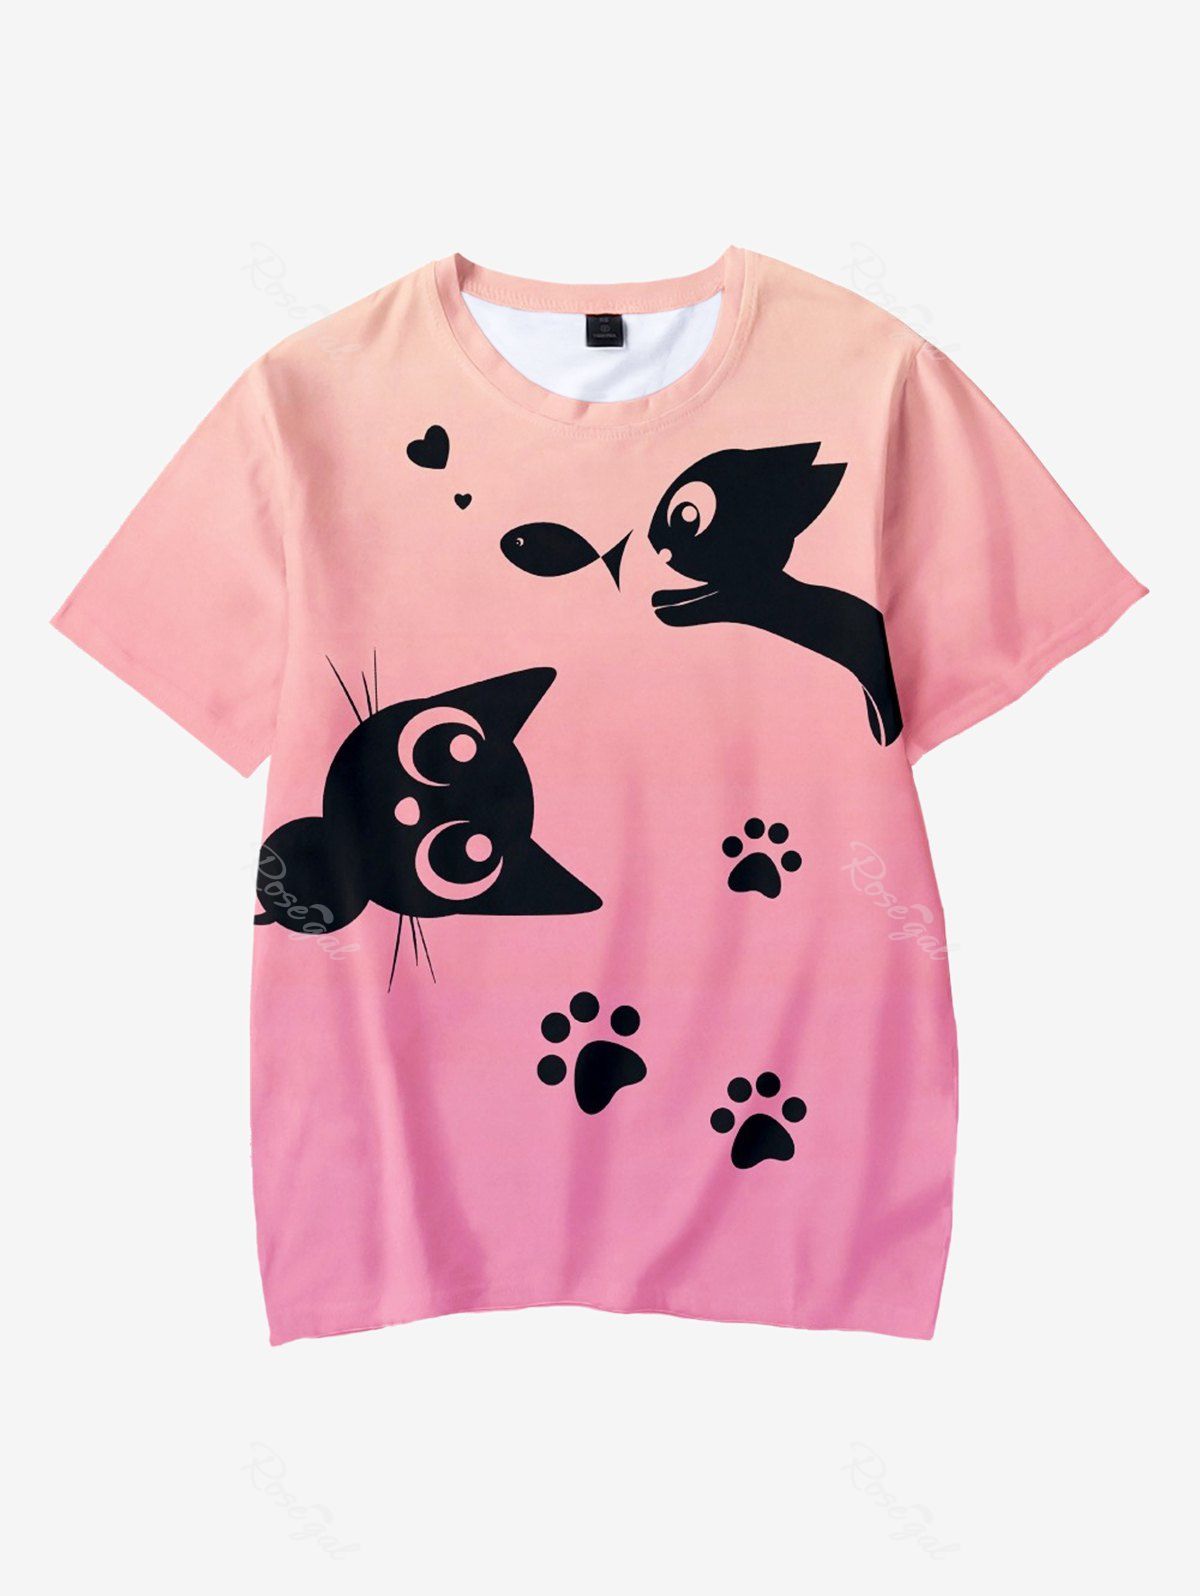 T-shirt Ombré à Imprimé Chat Dessin Animé de Grande Taille pour Enfants Rose clair 110